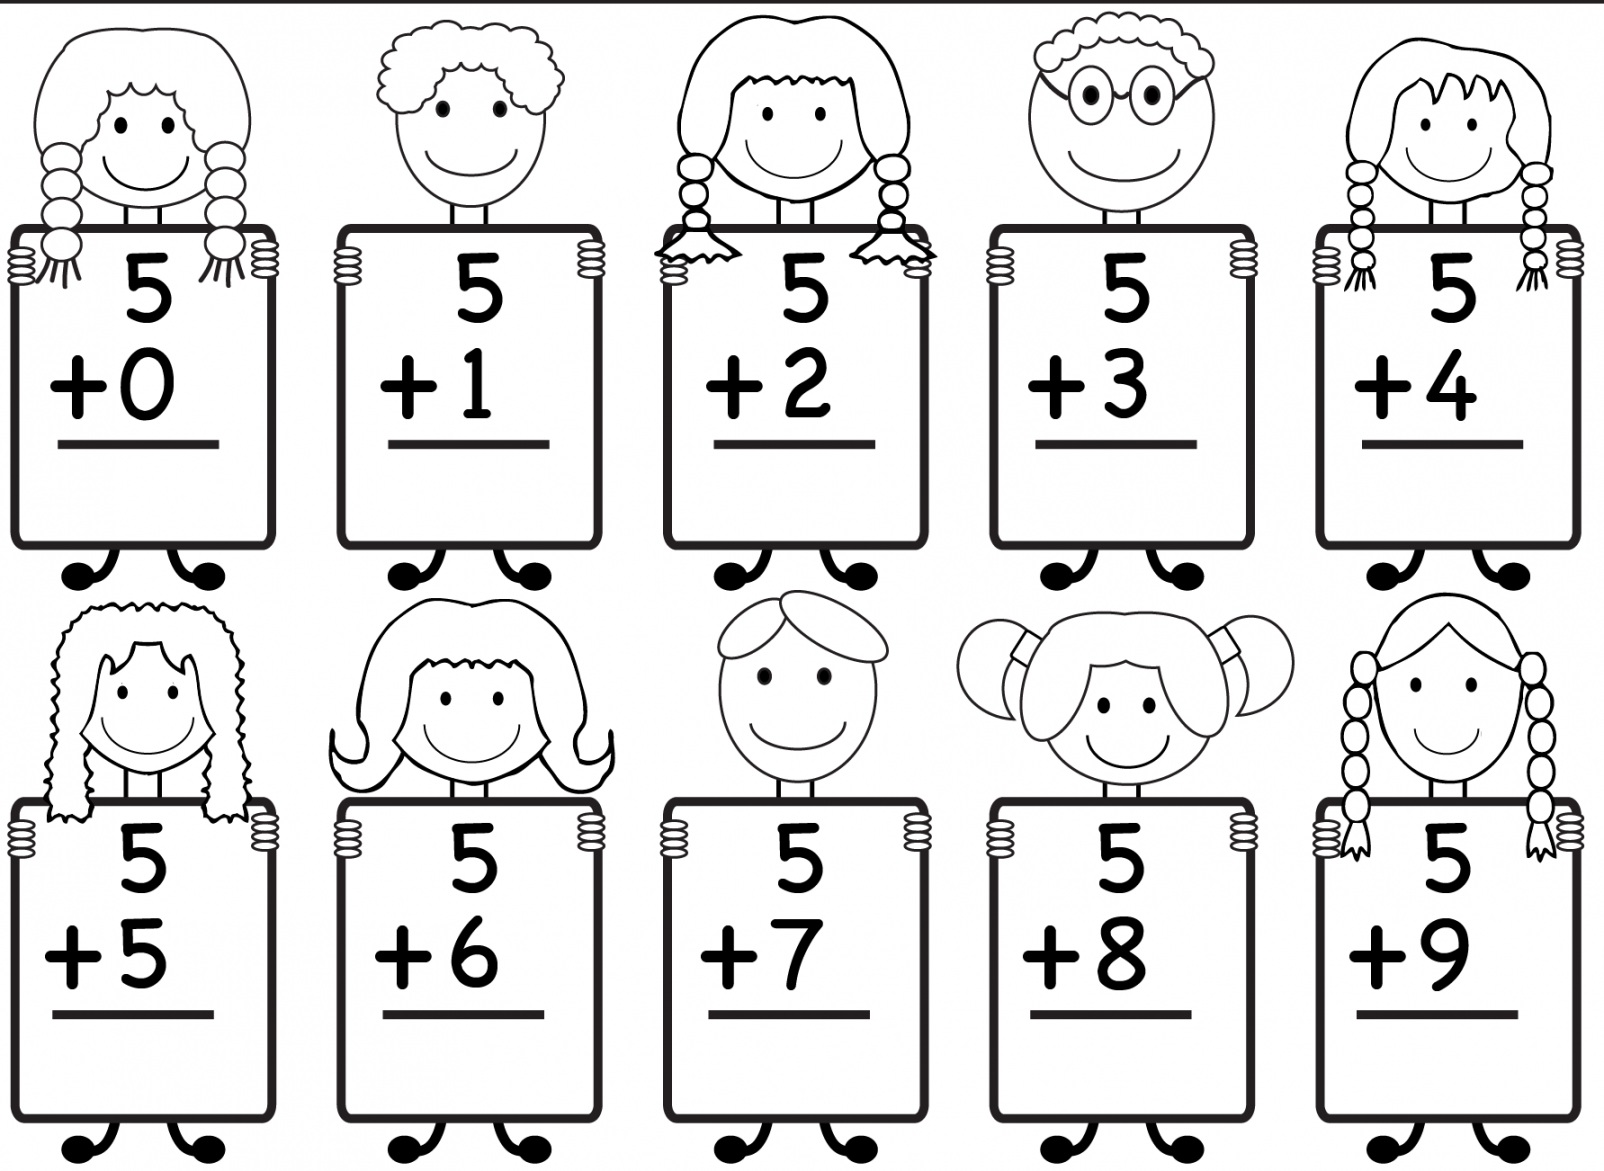 Kindergarten Worksheets Free Printable - Printable - Free Printable Kindergarten Math Worksheets